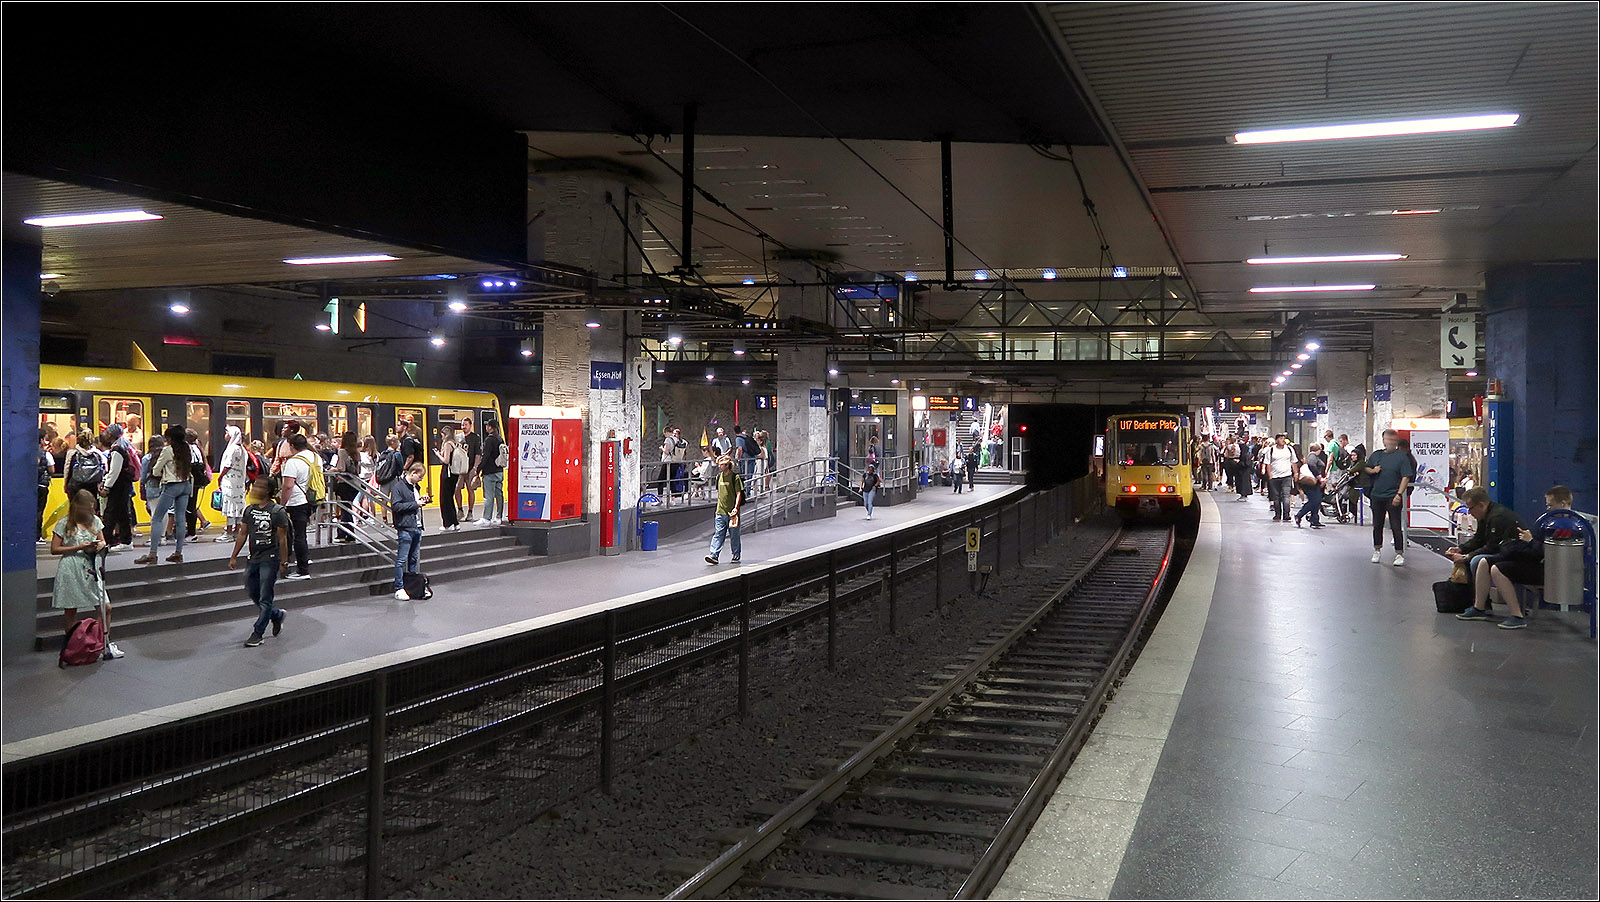 Drei Stadtbahn- und vier Tramlinien - 

... halten im viergleisigen, 1977 eröffneten U-Bahnhof Essen-Hauptbahnhof. Die beiden im Gefälle liegenden Bahnsteige sind jeweils auf einer Seite mit Hochbahnsteigen und auf der anderen Seite mit tiefen Bahnsteige versehen. An den tiefen Bahnsteigen liegen die Meterspurgleise für die Tram. Im Norden der Station trennen sich die Stadtbahn- und Tramlinien in ihre jeweilige eigene Streckenabschnitte, während im Süden sich die Strecke in drei Richtungen verzweigen, nach Westen in die Stadtbahnlinien nach Mülheim und zur Margarethenhöhe, nach Süden eine Mischbetriebsstrecke auf dreischienigen Gleisen mit der Stadtbahn zur Messe/Gruga und den Tramlinien nach Bredeney sowie nach Osten zu einer Tunnelausfahrt für zwei weitere Tramlinien.

Von der blauen Beleuchtung, die seit 1998 diese Station eine besondere Prägung gab, war bei meinem aktuellen Besuch nicht zu sehen. Ob sie Sparmaßnahmen zum Opfer gefallen ist?

23.08.2023 (M)